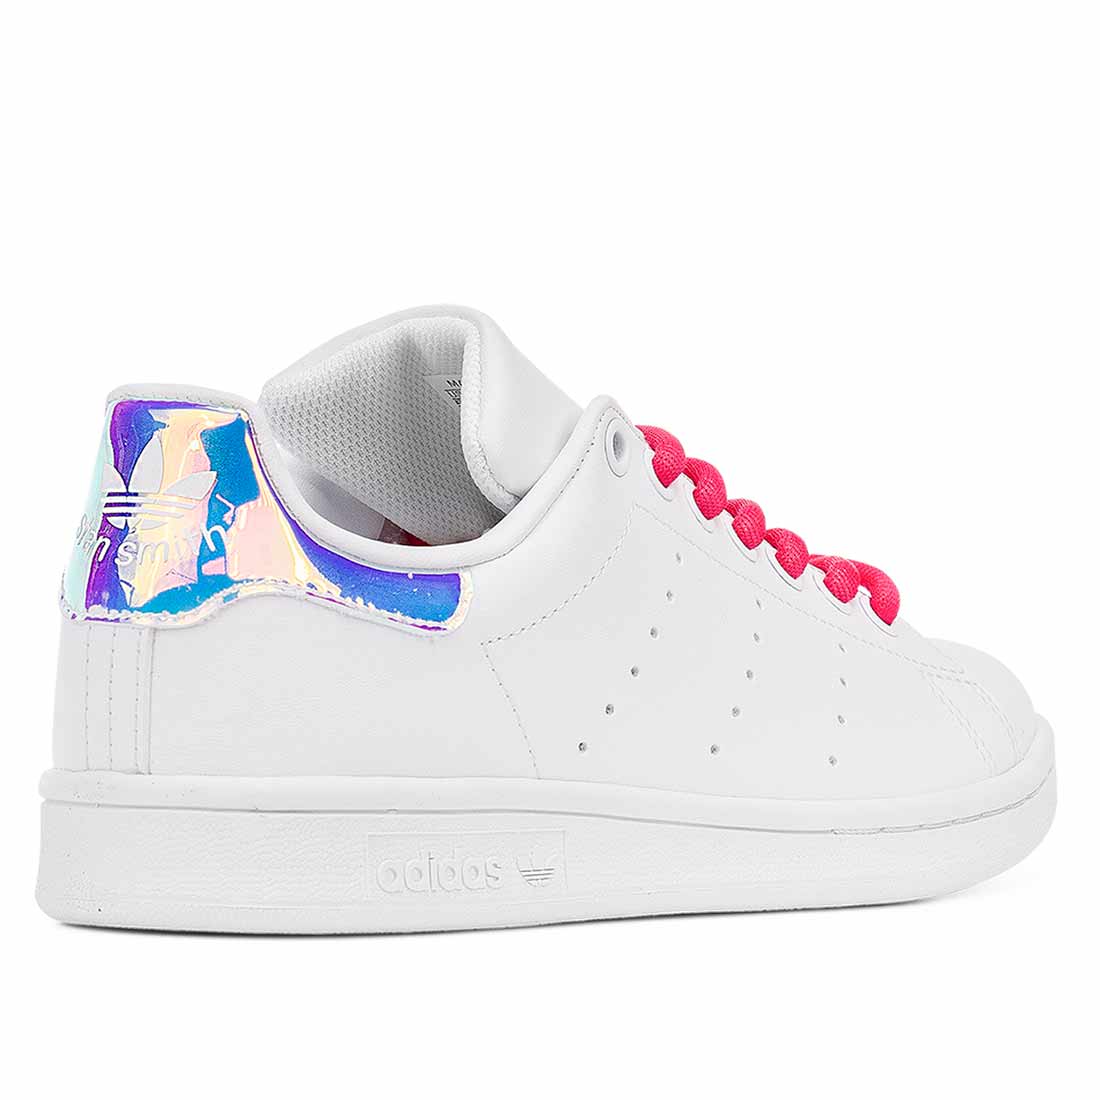 Adidas bianche con lacci fluo rosa